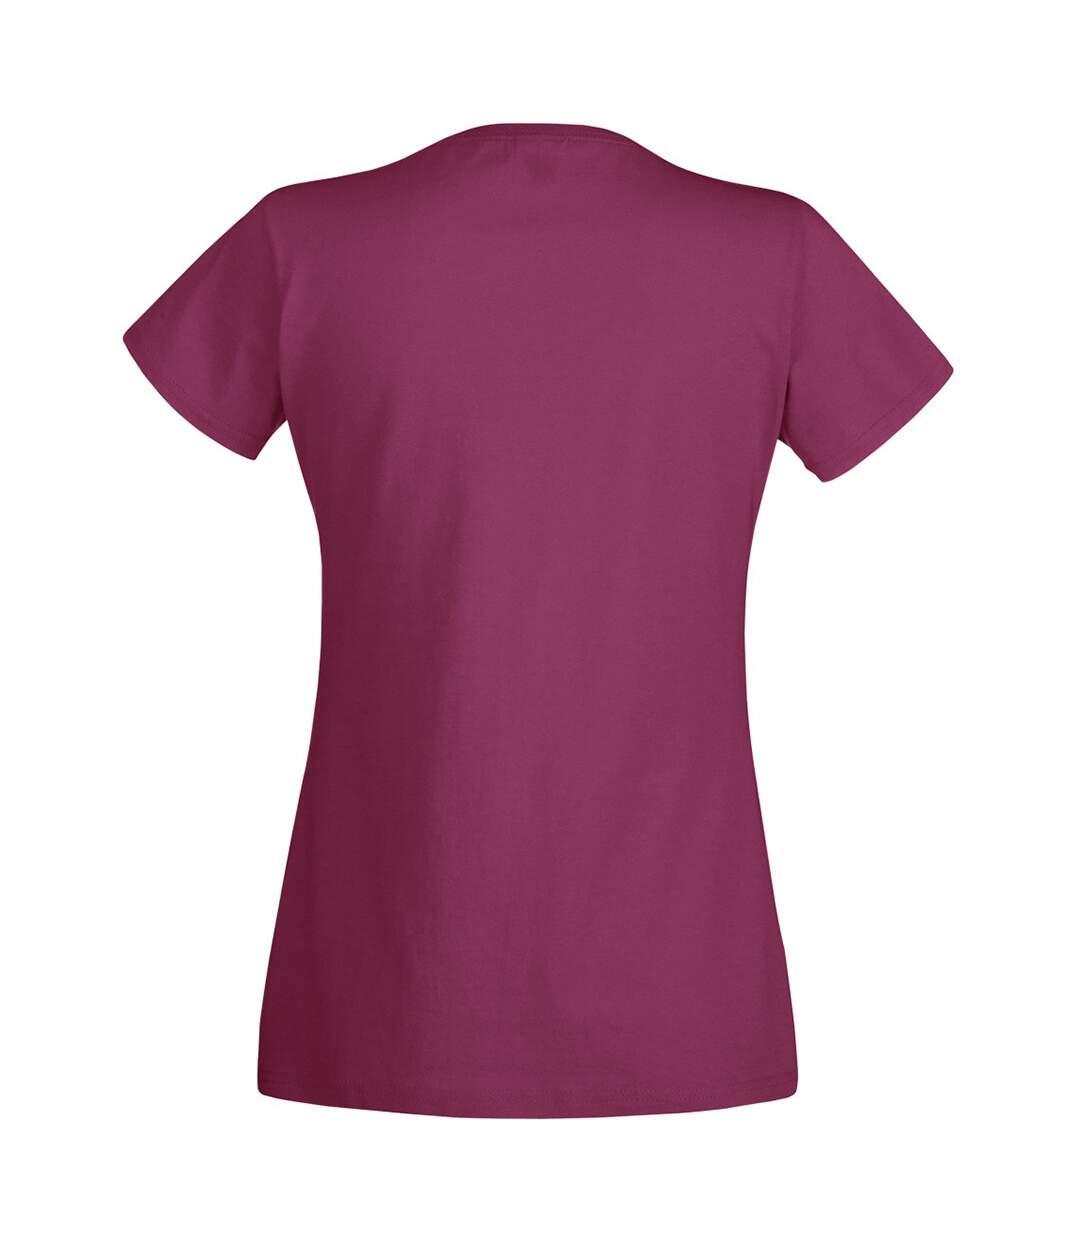 Fruit Of The Loom - T-shirt manches courtes - Femme (Bordeaux) - UTBC1354